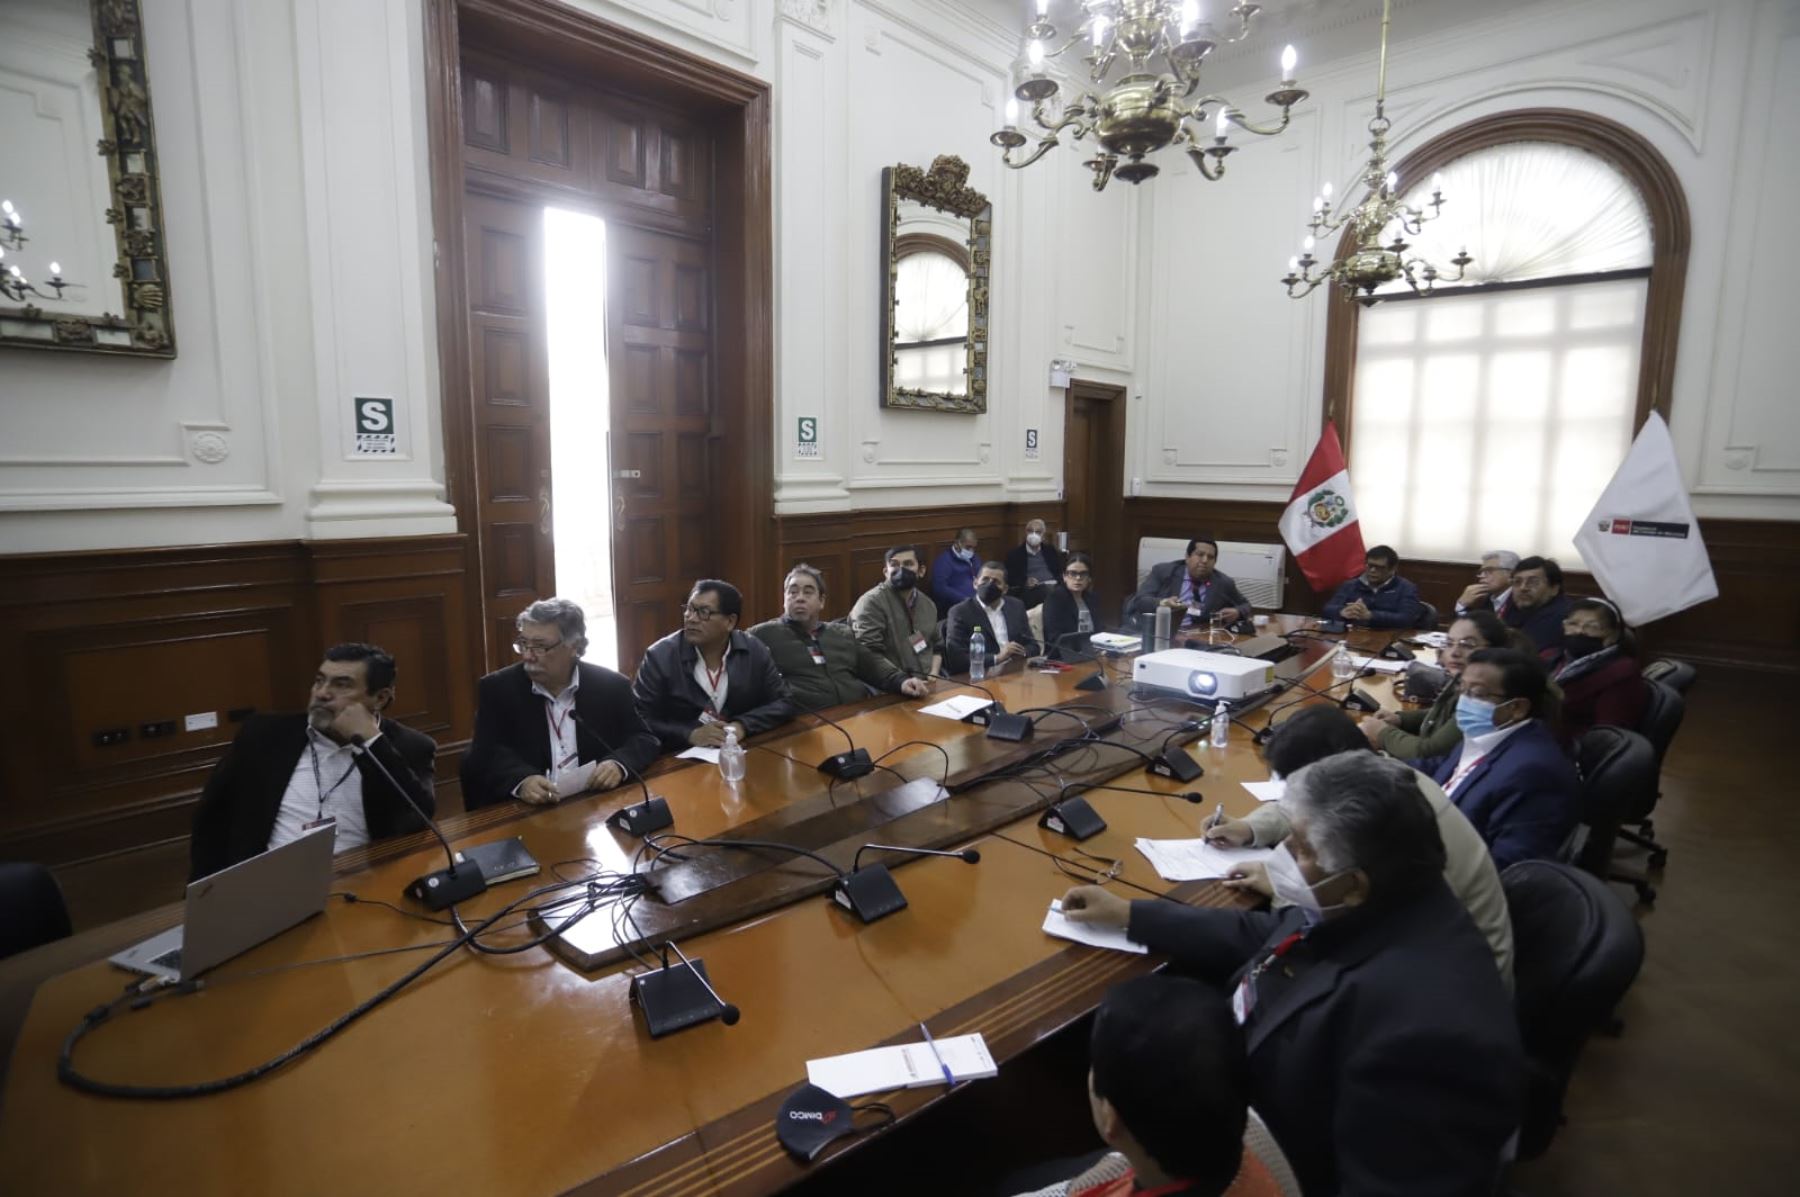 La reunión entre el gobierno y los transportistas se inició a las 10 de la mañana. Foto: Andina.